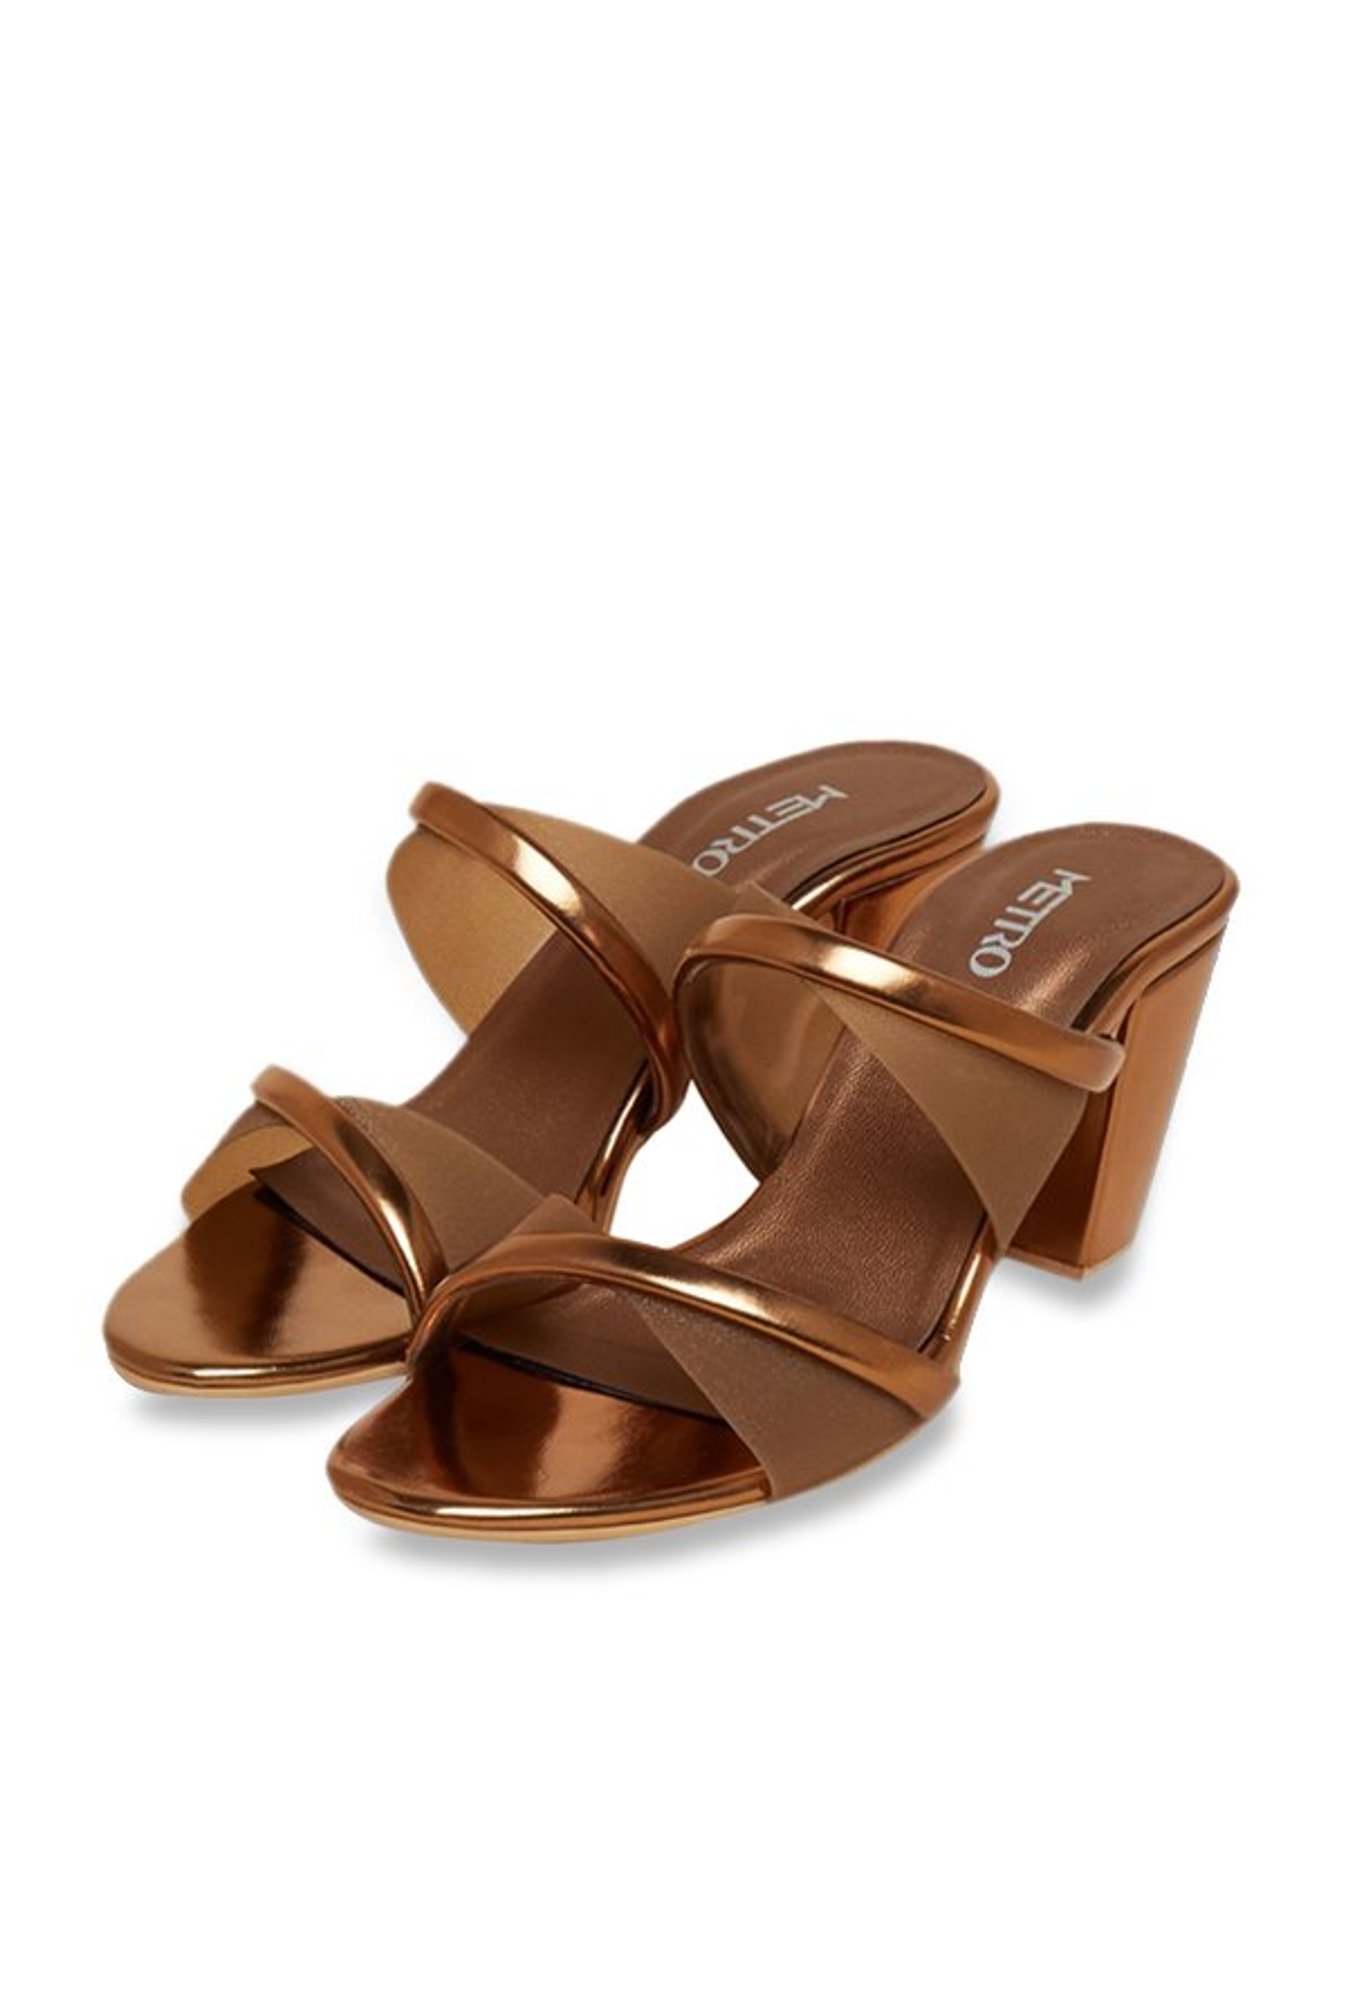 Buy Metro Women Rose Gold Synthetic Fashion Slipon Sandal UK/5 EU/38  (40-2520) at Amazon.in